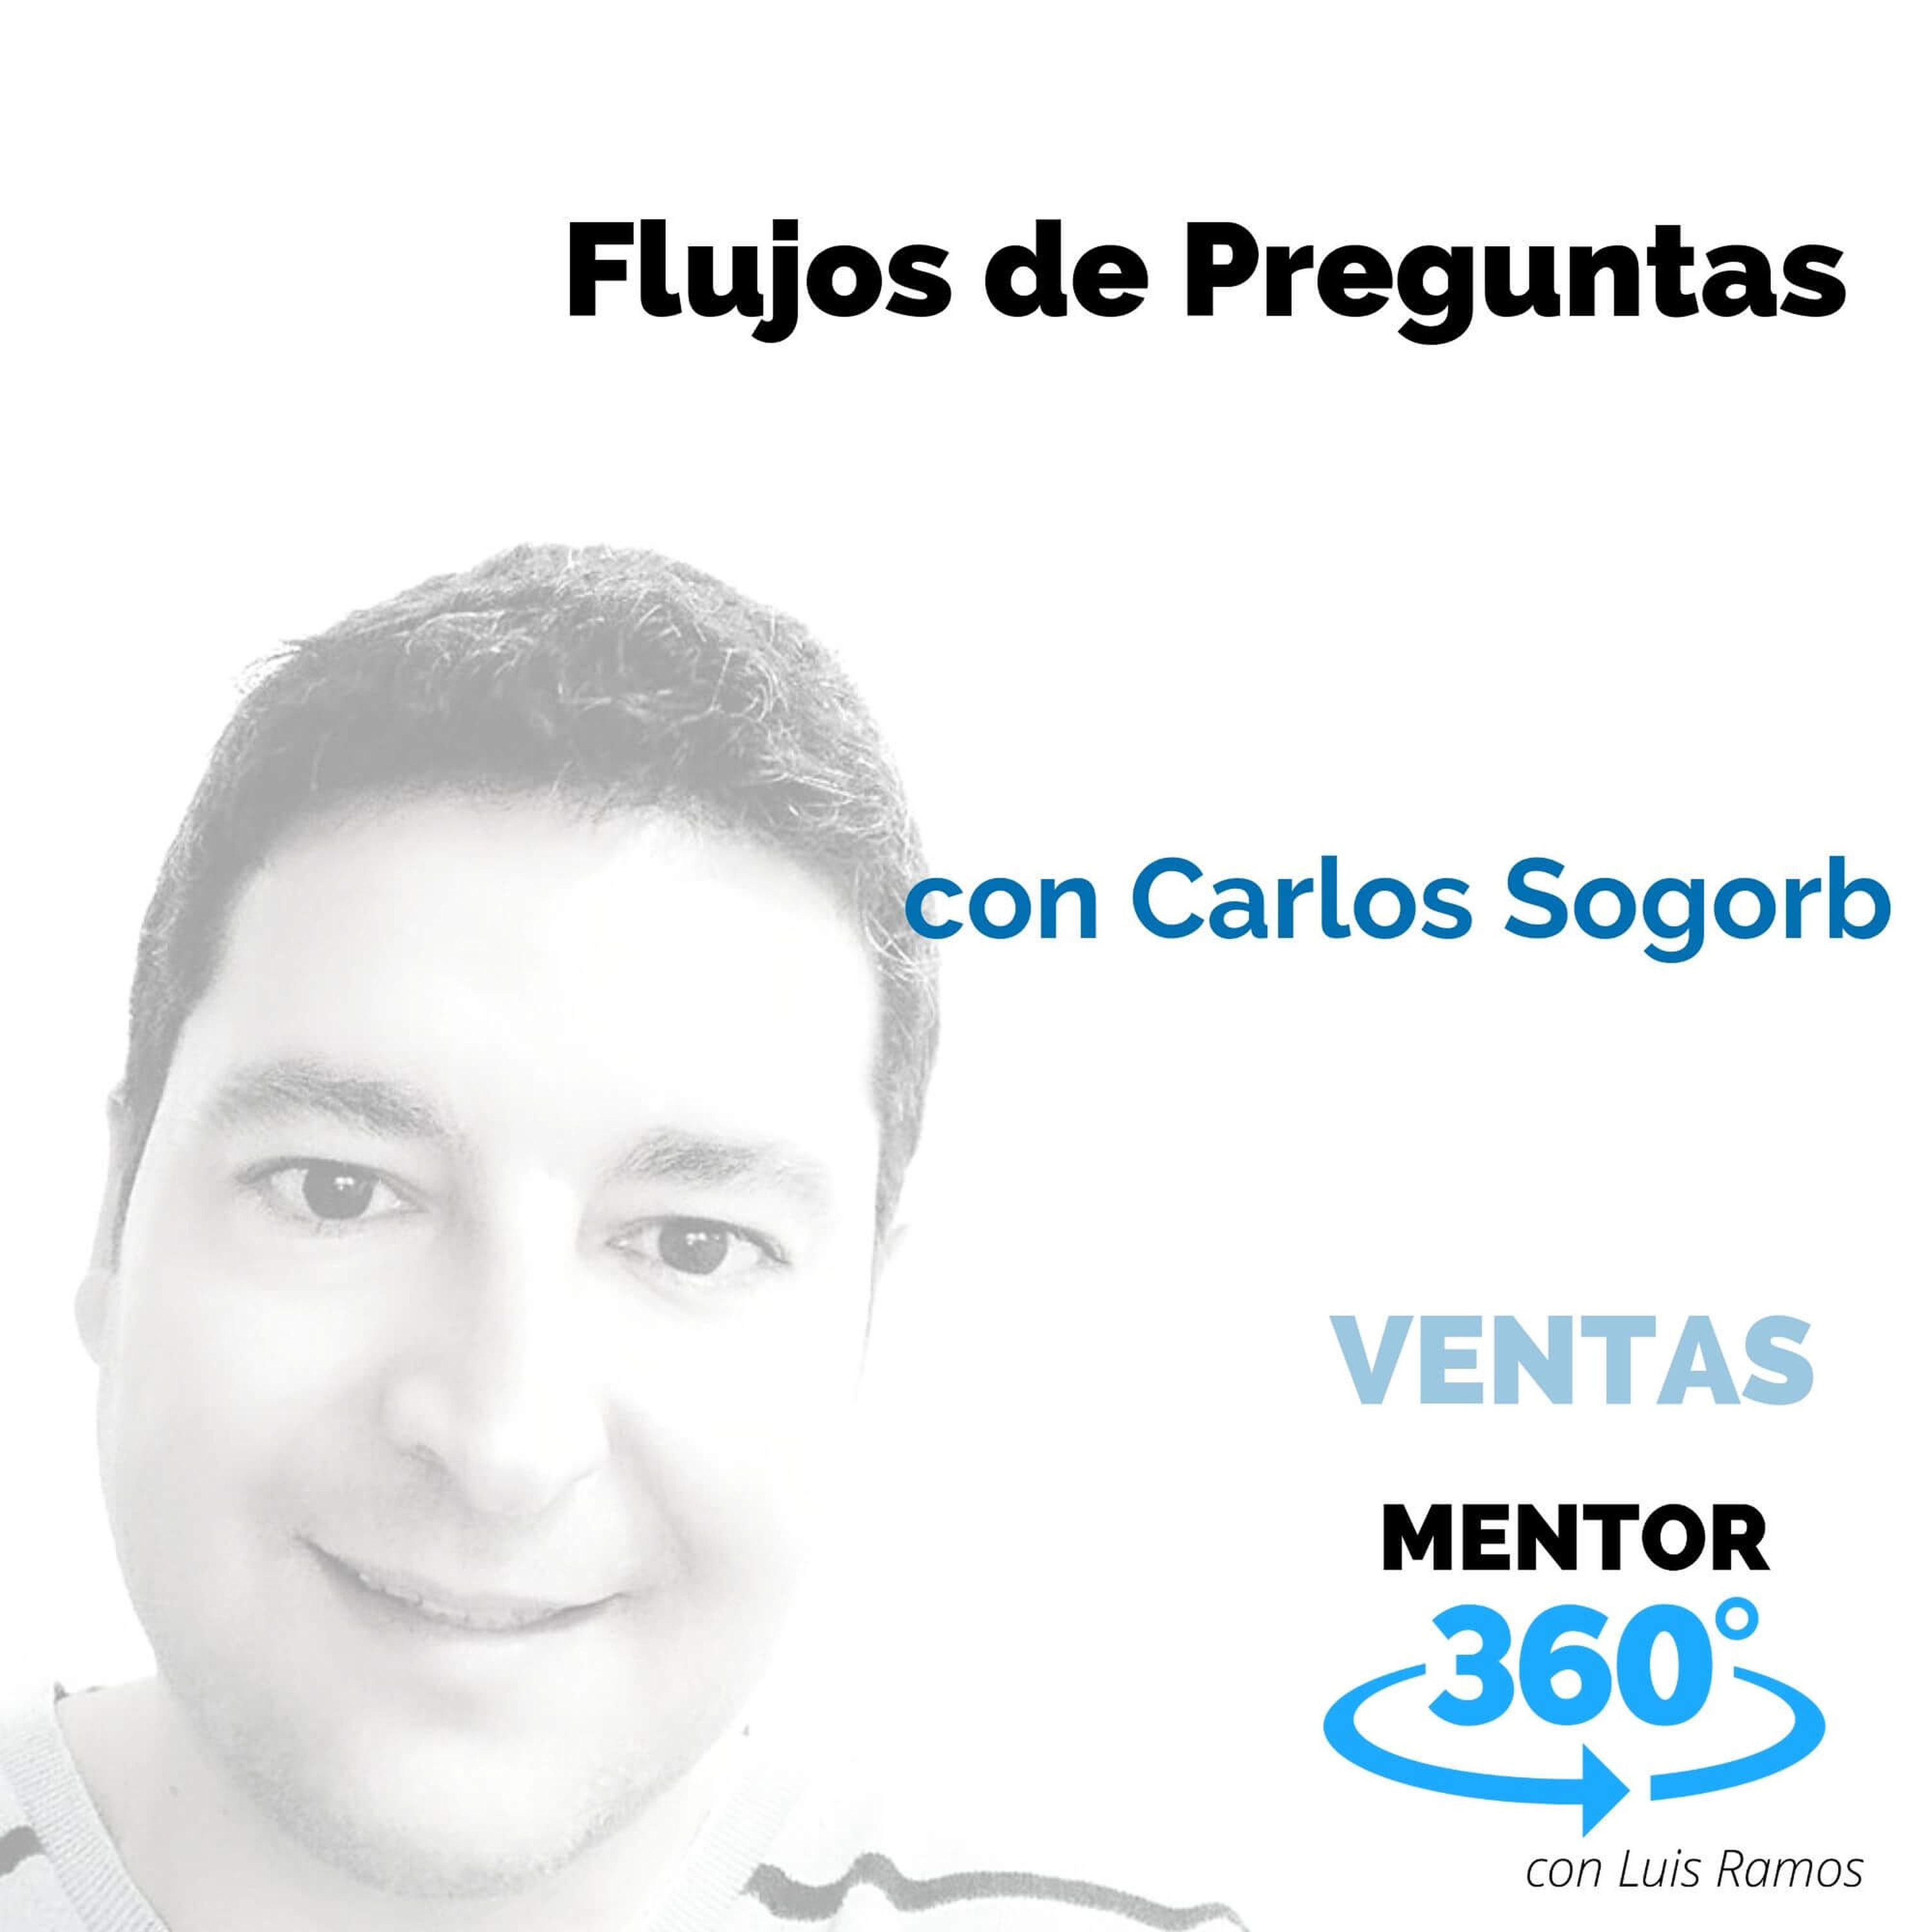 Flujos de preguntas, con Carlos Sogorb - VENTAS - MENTOR360